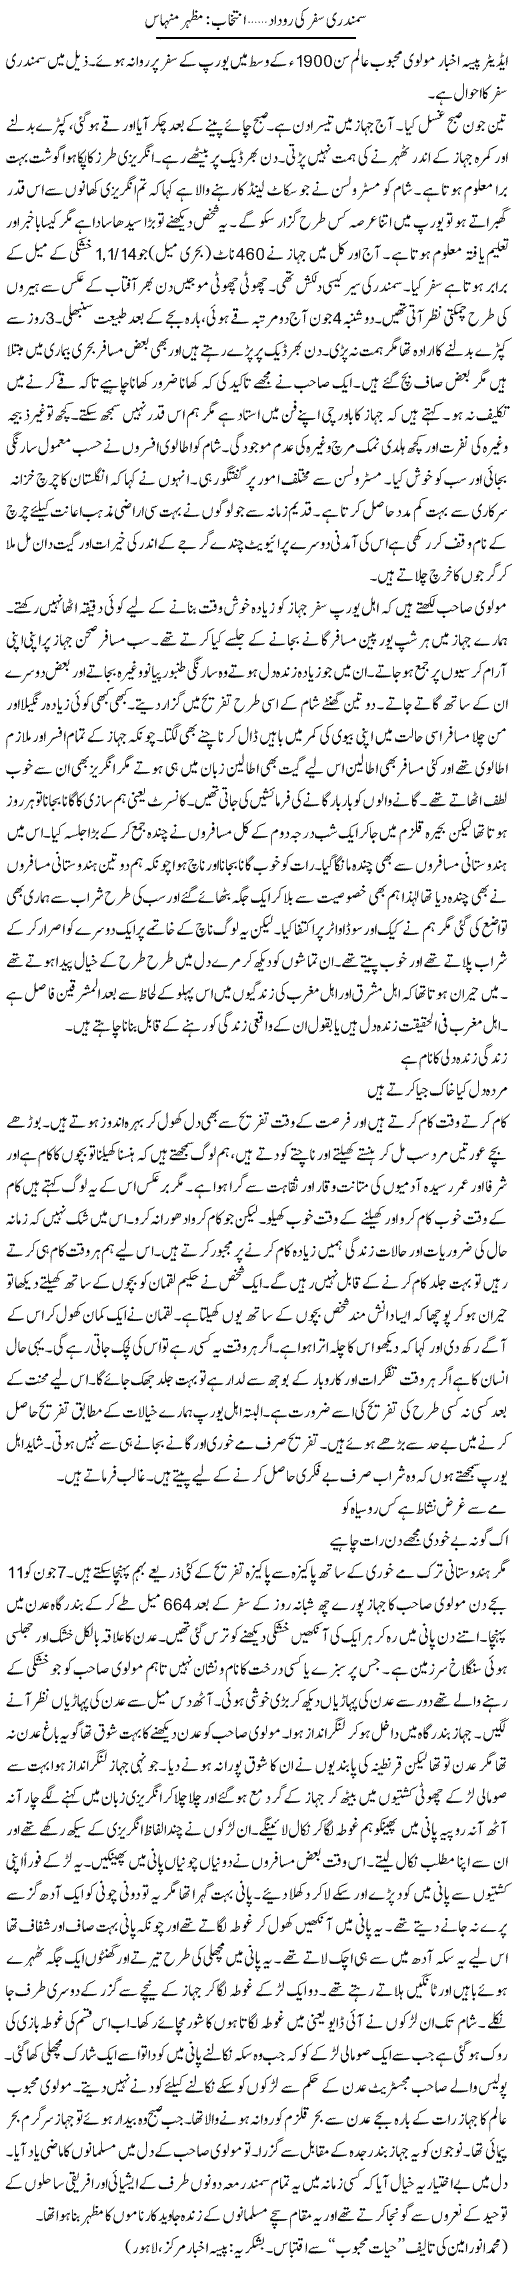 Samandari Safar Ki Rudad | Mazhar Minhas | Daily Urdu Columns